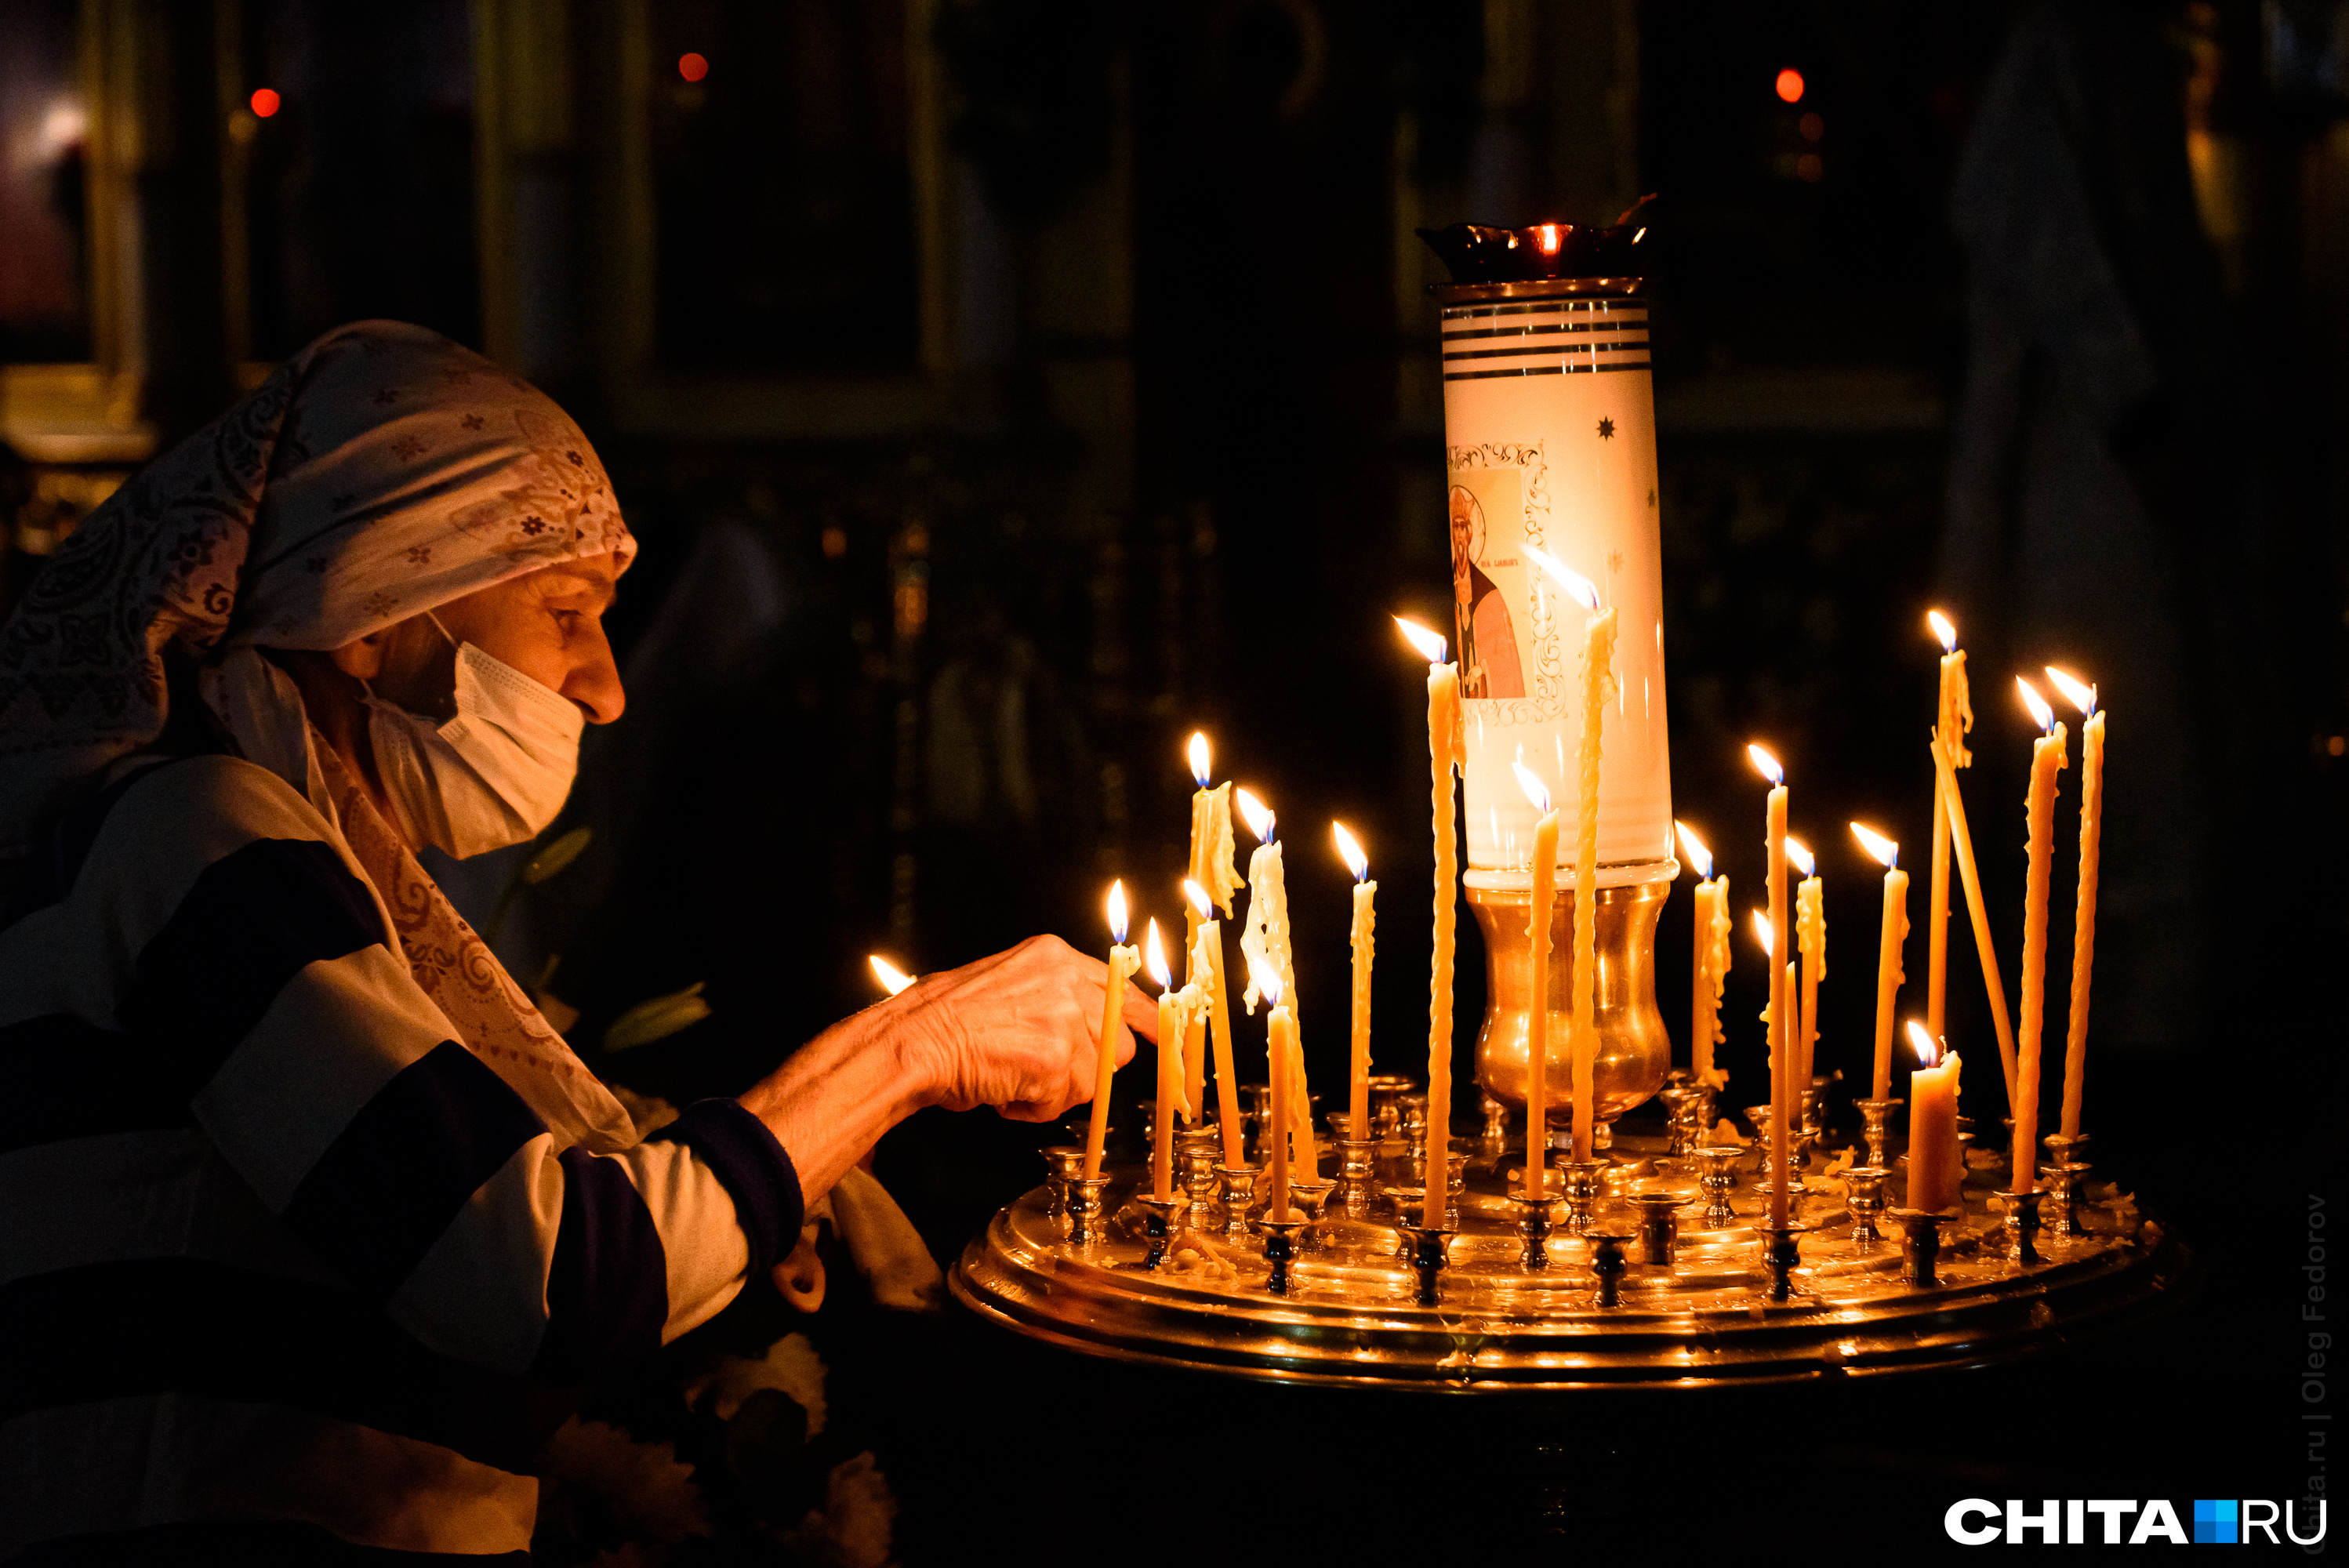 Божественная ночная литургия пройдет в кафедральном соборе Читы 7 января